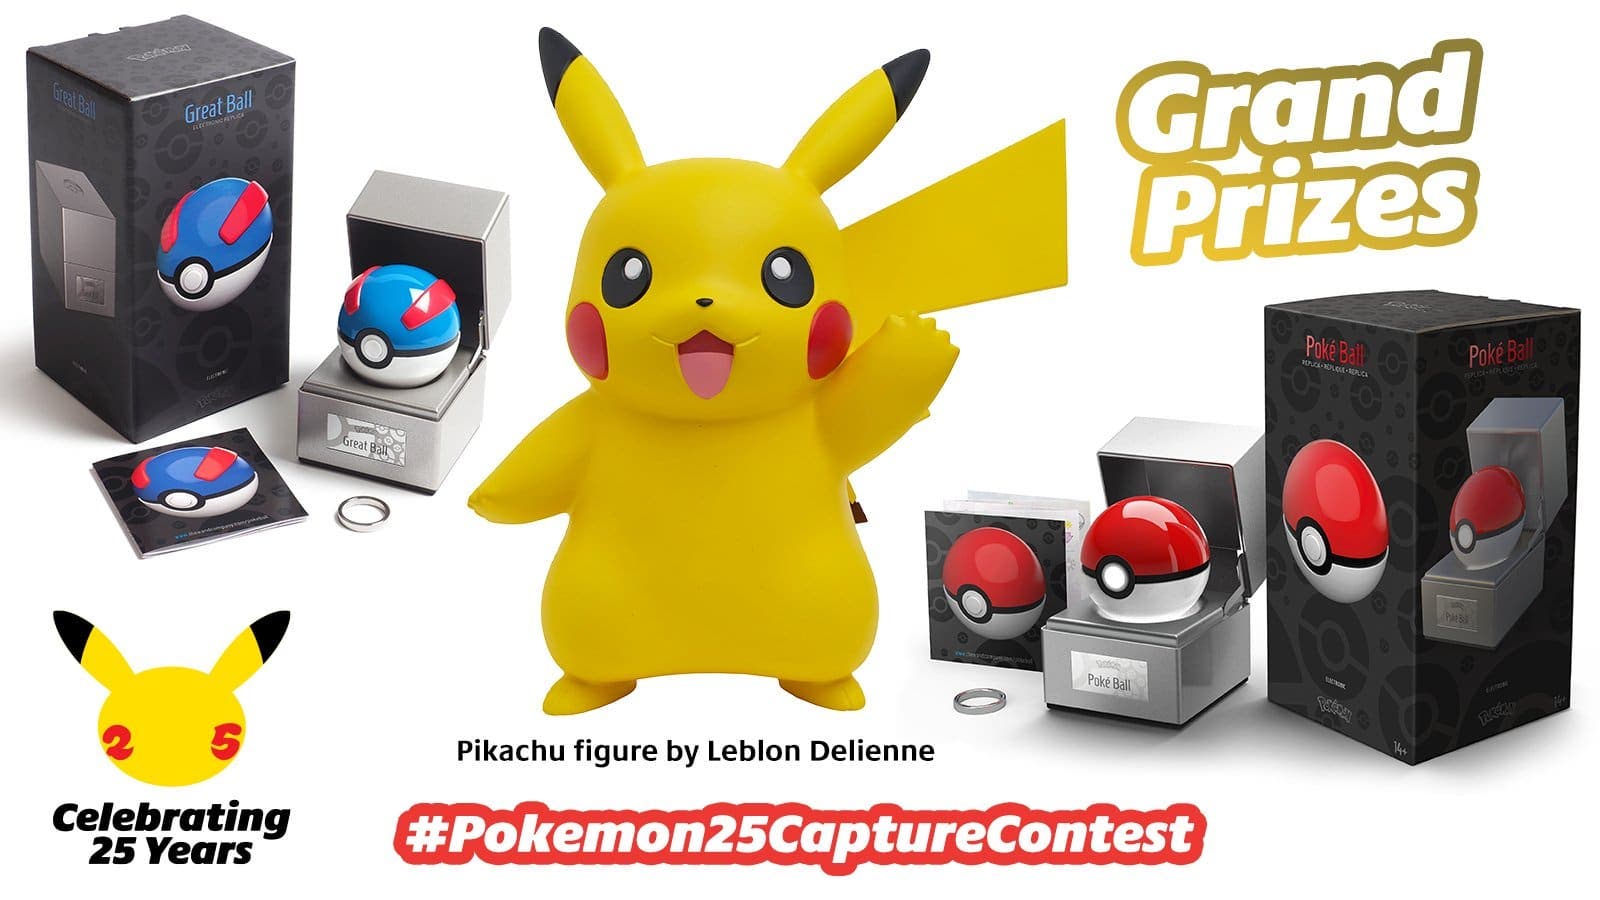 Nintendo Europa lanza su concurso #Pokemon25CaptureContest con grandes premios